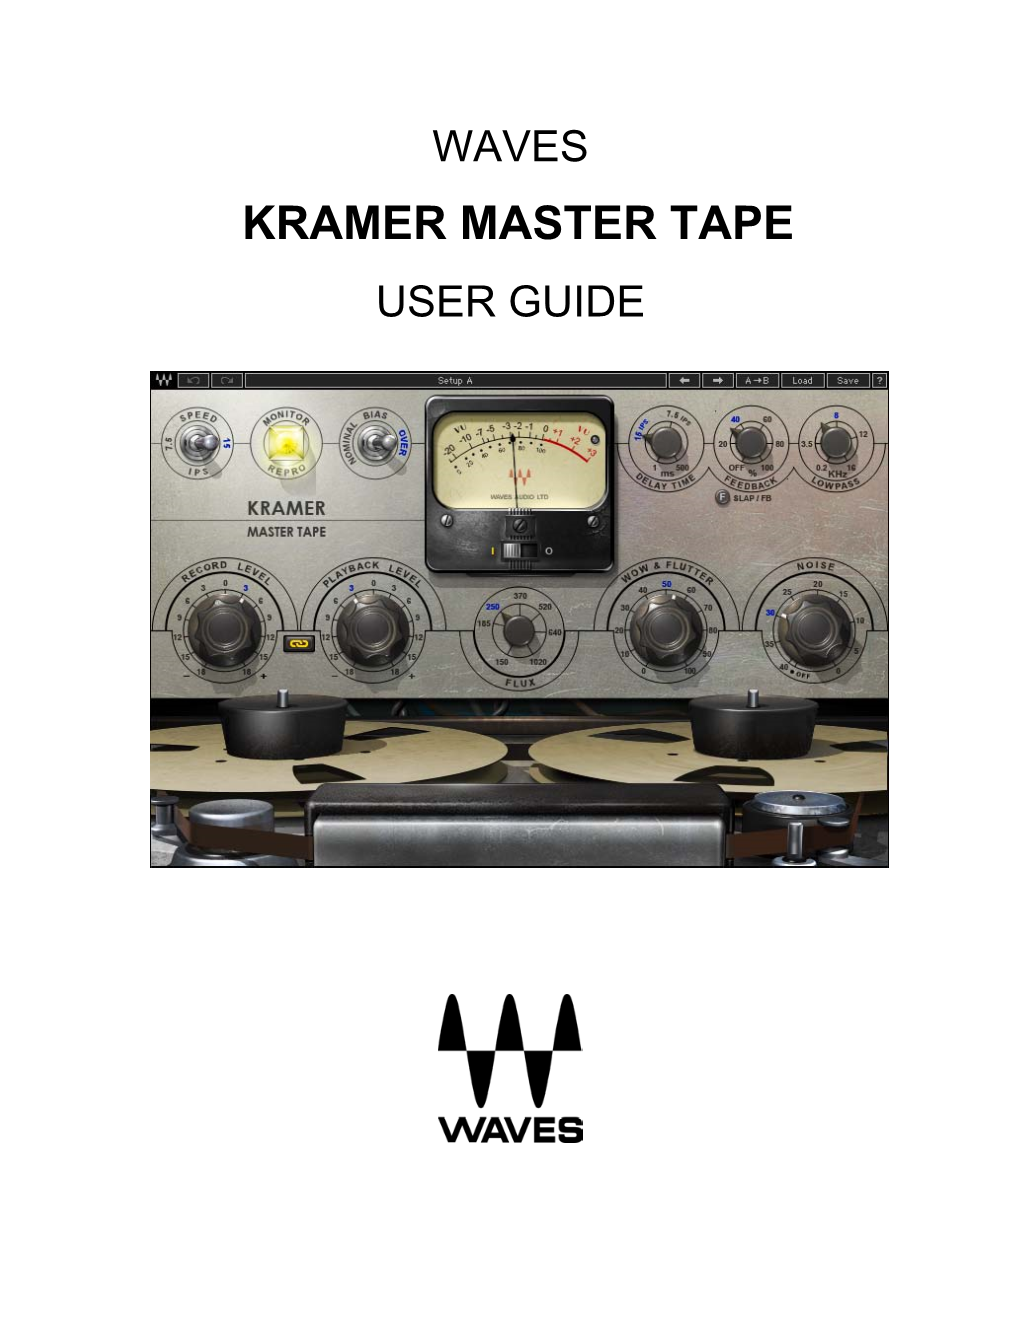 Kramer Master Tape User Guide